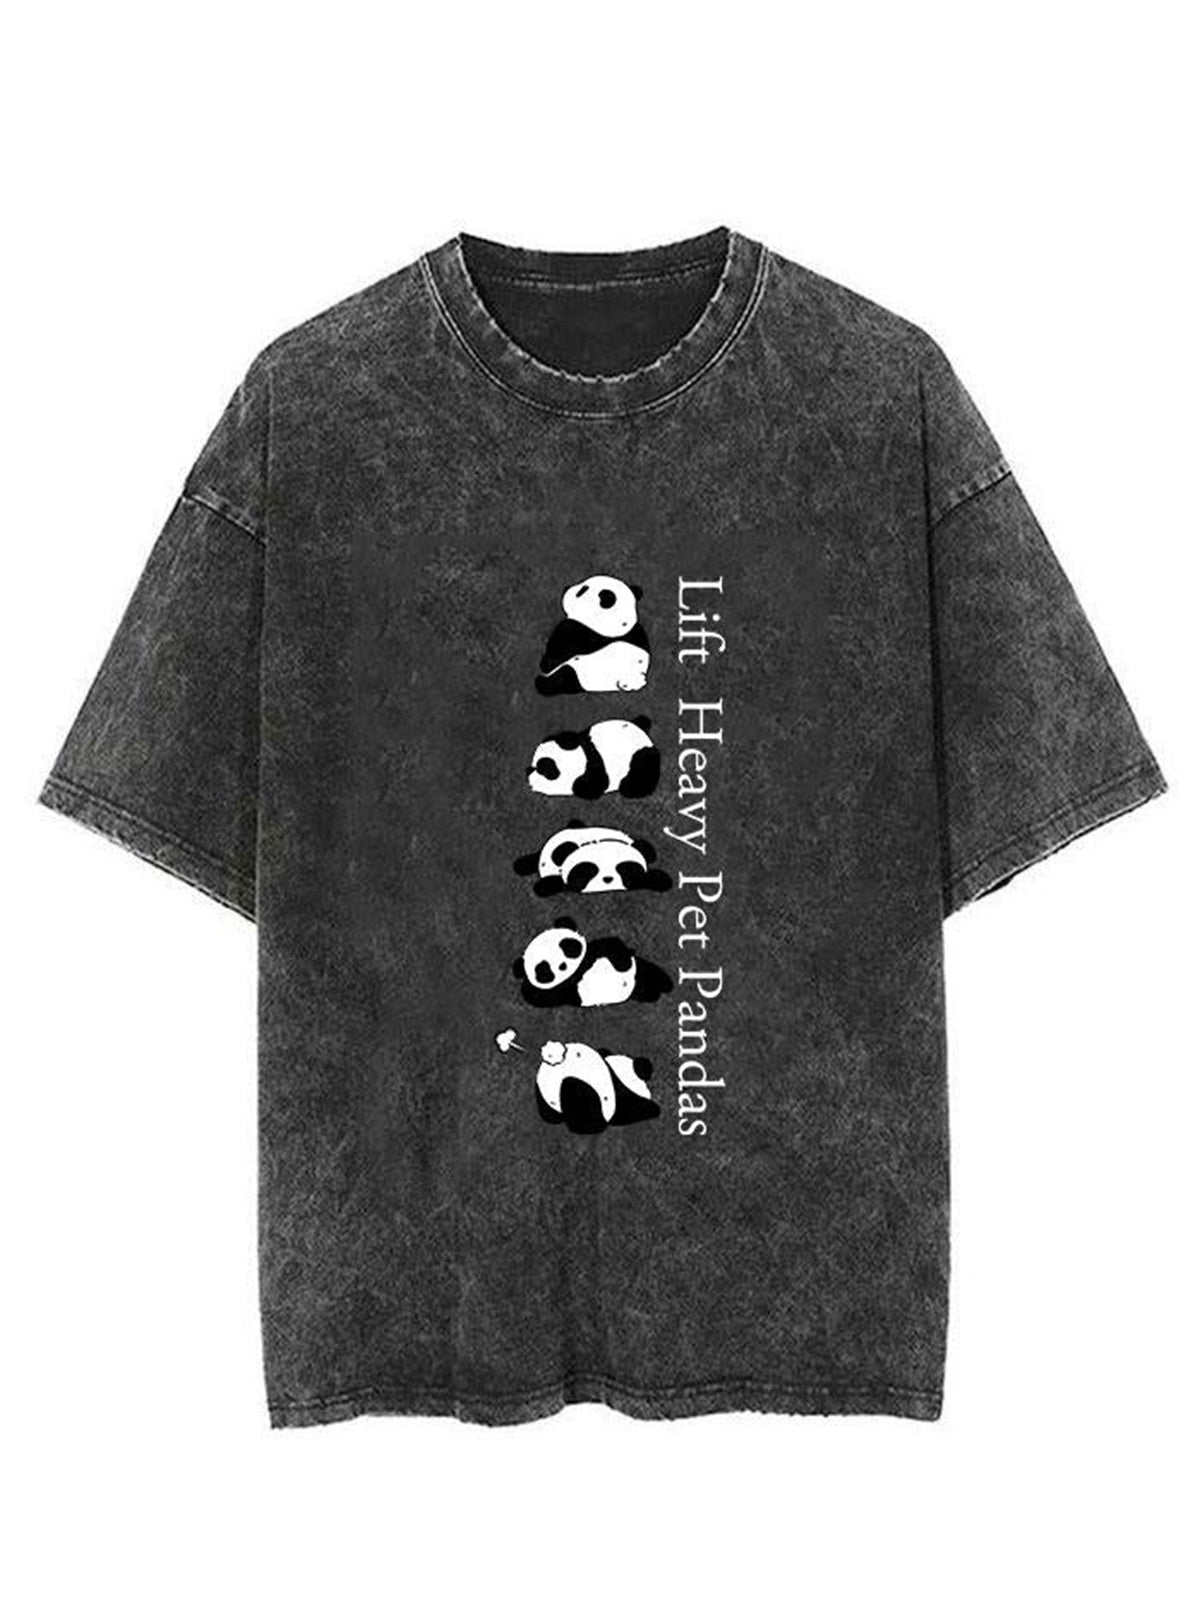 Lift Heavy Pet Pandas Unisex Short Sleeve Washed T-Shirt